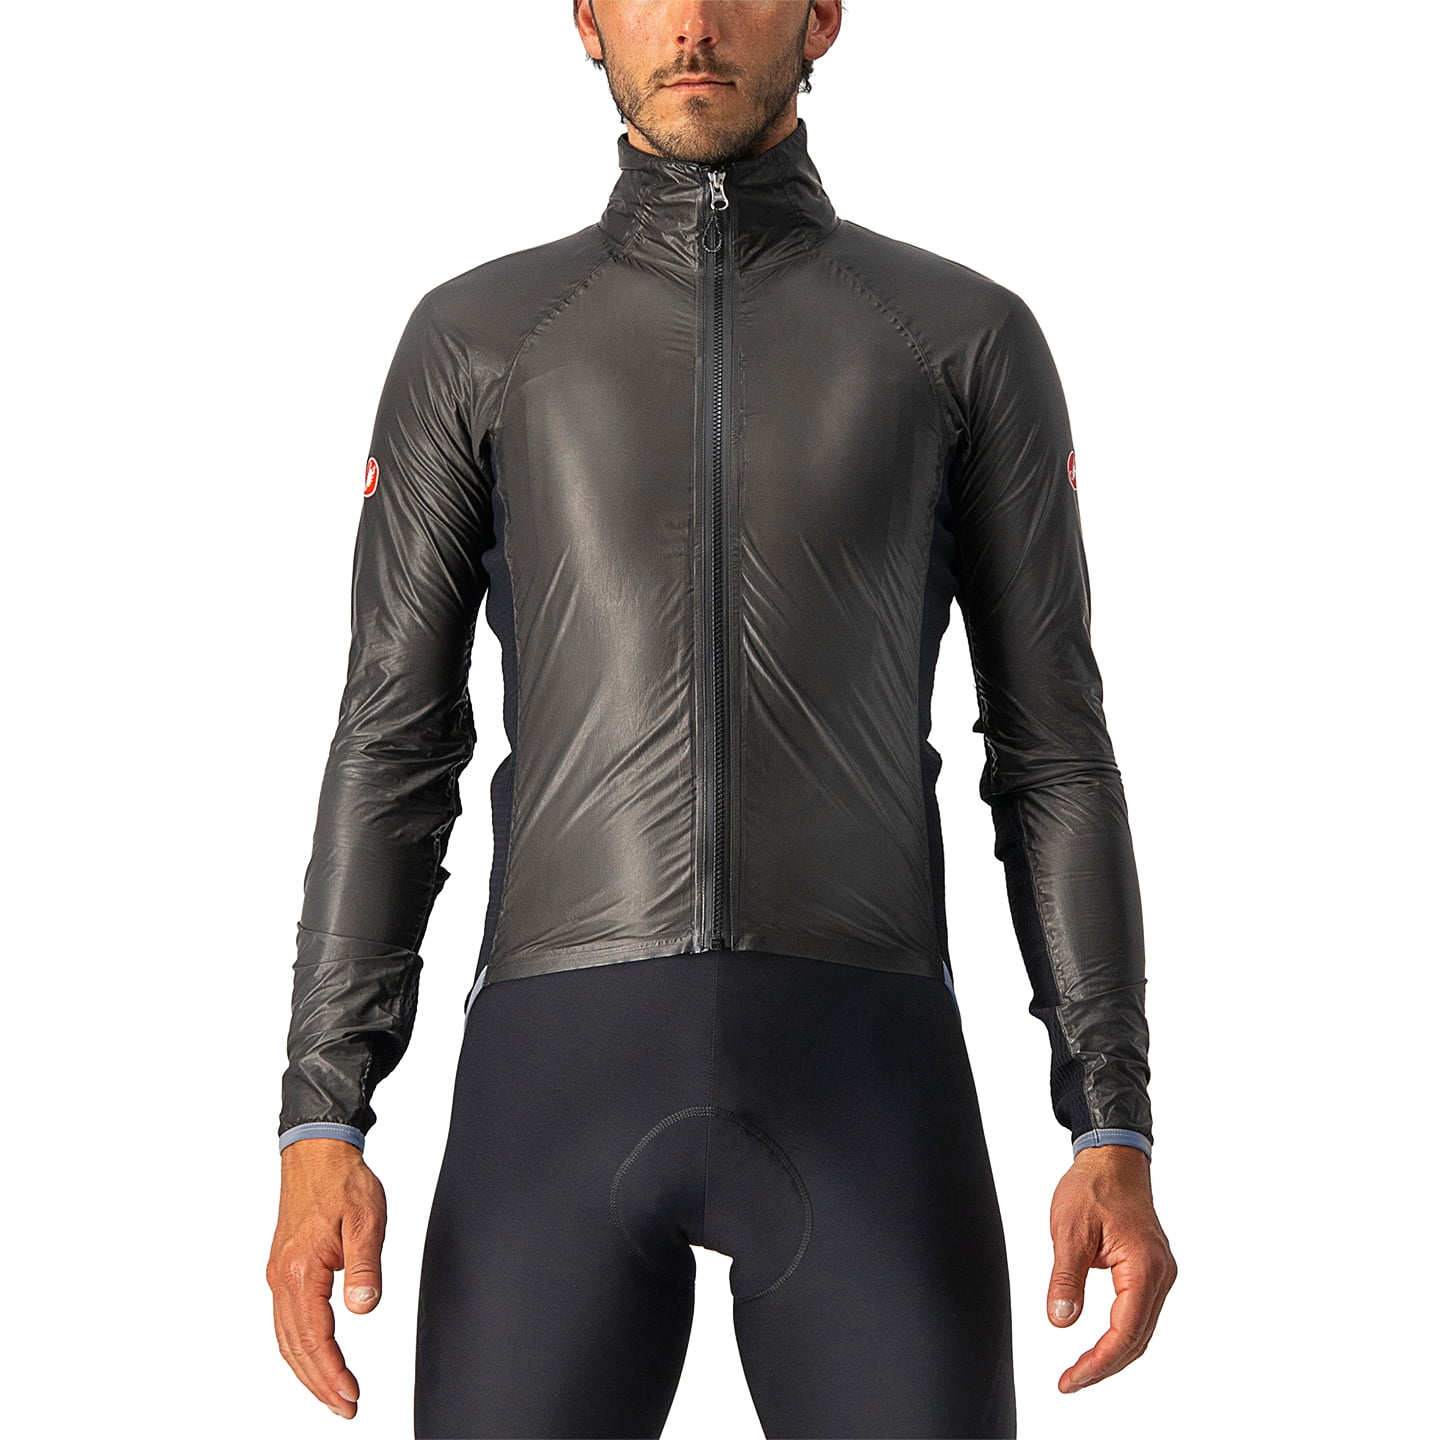 CASTELLI Slicker Pro rain jacket Waterproof Jacket, for men, size L, Cycle jacket, Rainwear